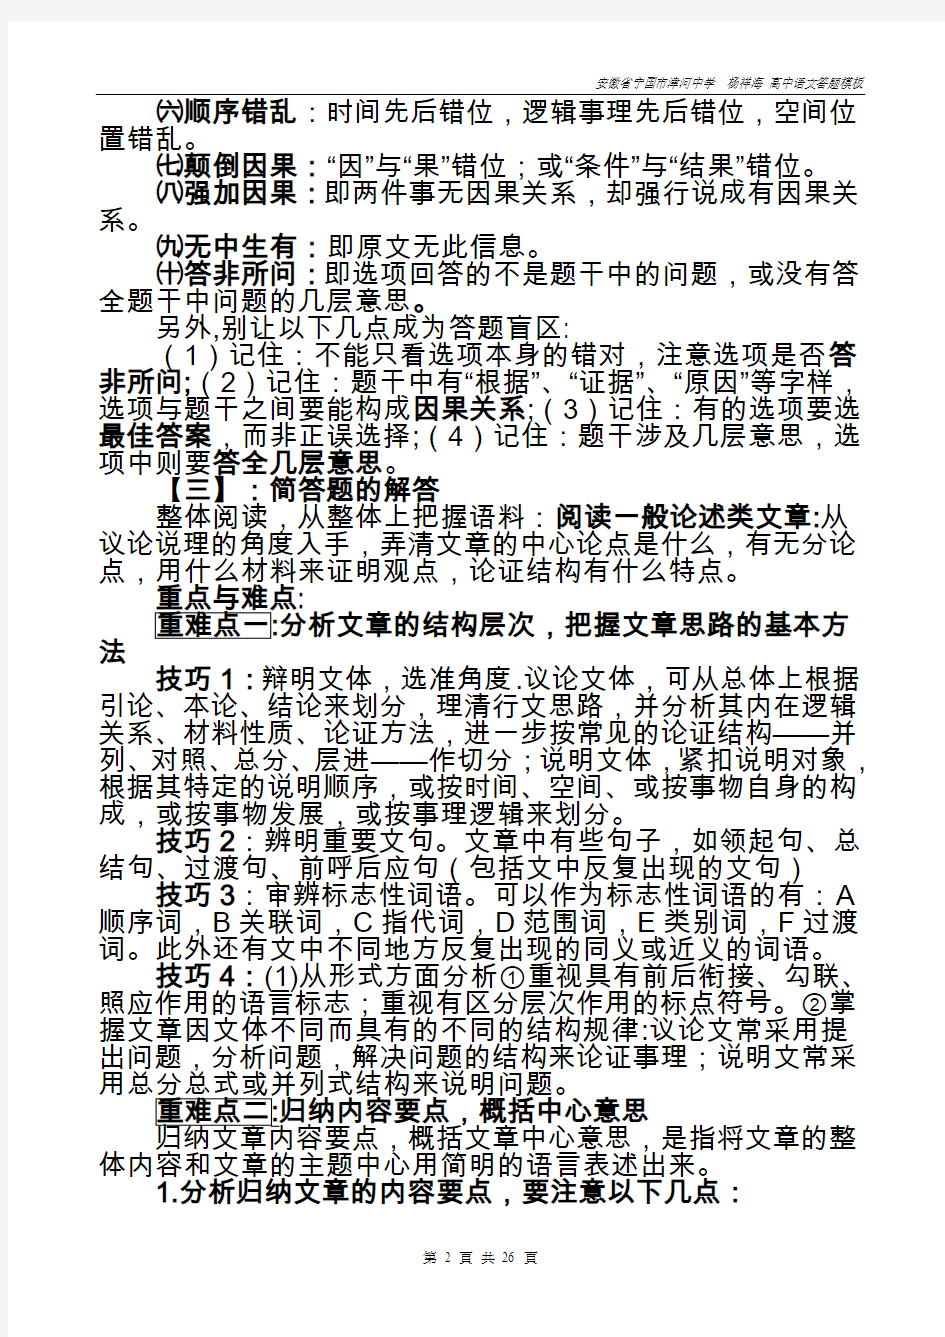 安徽省高考语文答题模板(2014届答题步骤及学科专业术语)